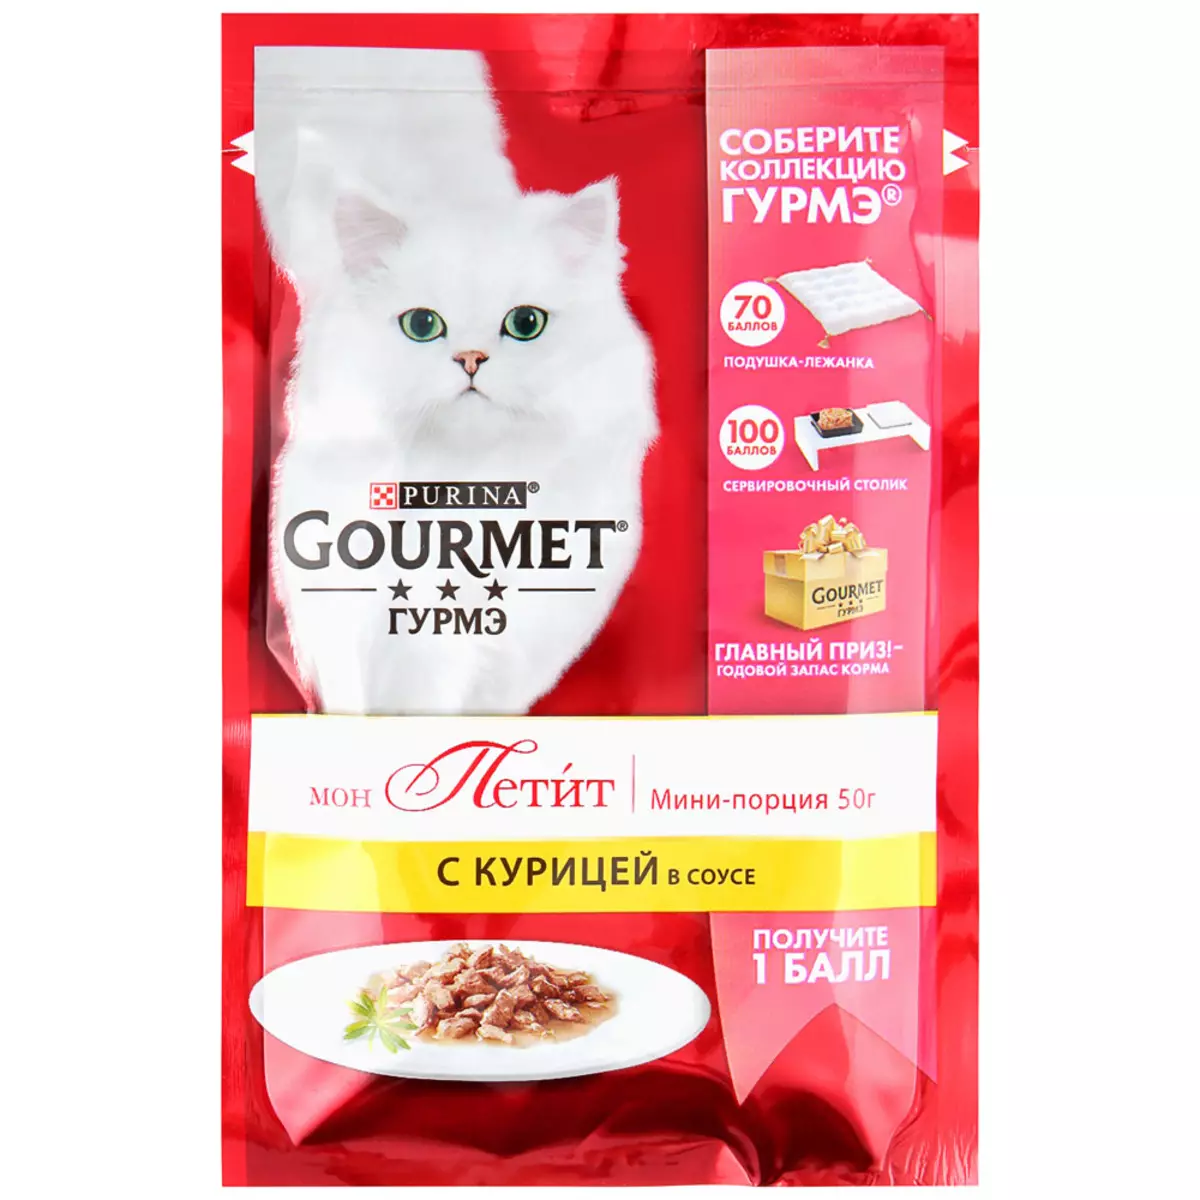 Gourmet: gat de gat i gatets de purina, patis humits i altres aliments enllaunats felins, la seva composició, comentaris 22711_37